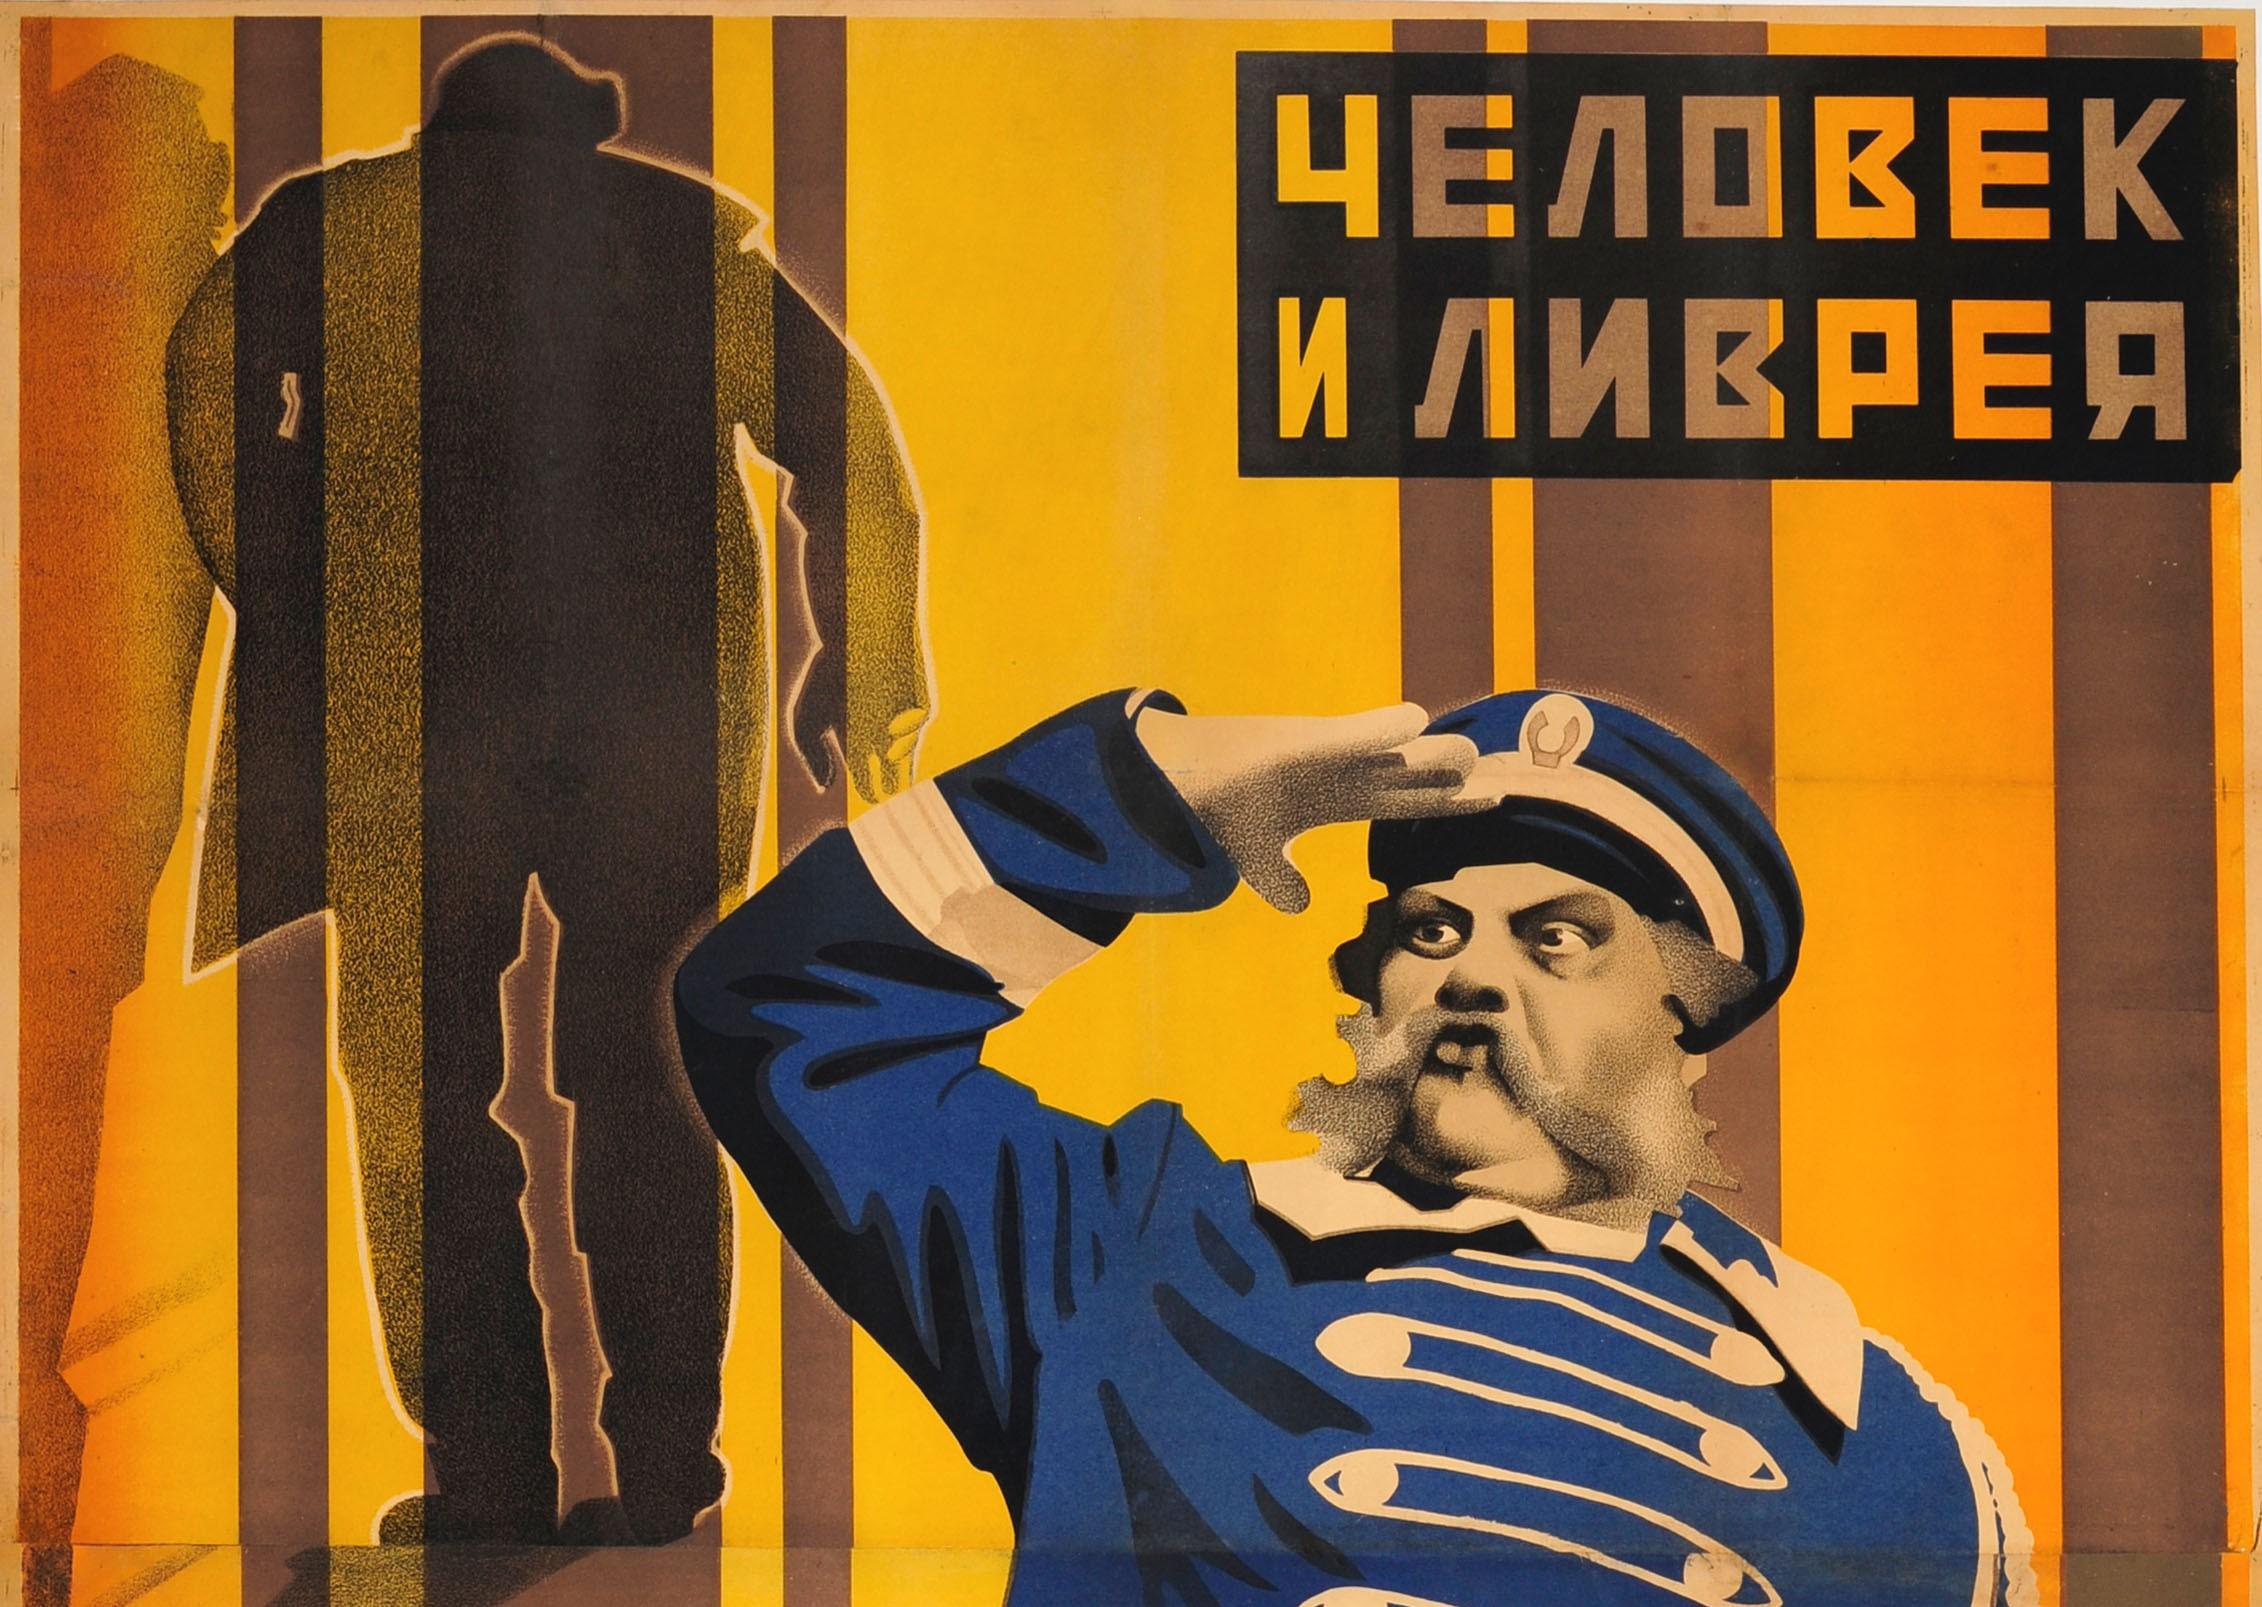 Affiche originale d'époque pour la sortie soviétique du film muet allemand Der Letzte Mann (Le dernier homme) The Last Laugh (Le dernier rire) de 1924 sur un portier vieillissant d'un hôtel prestigieux qui est rétrogradé au rang de préposé aux